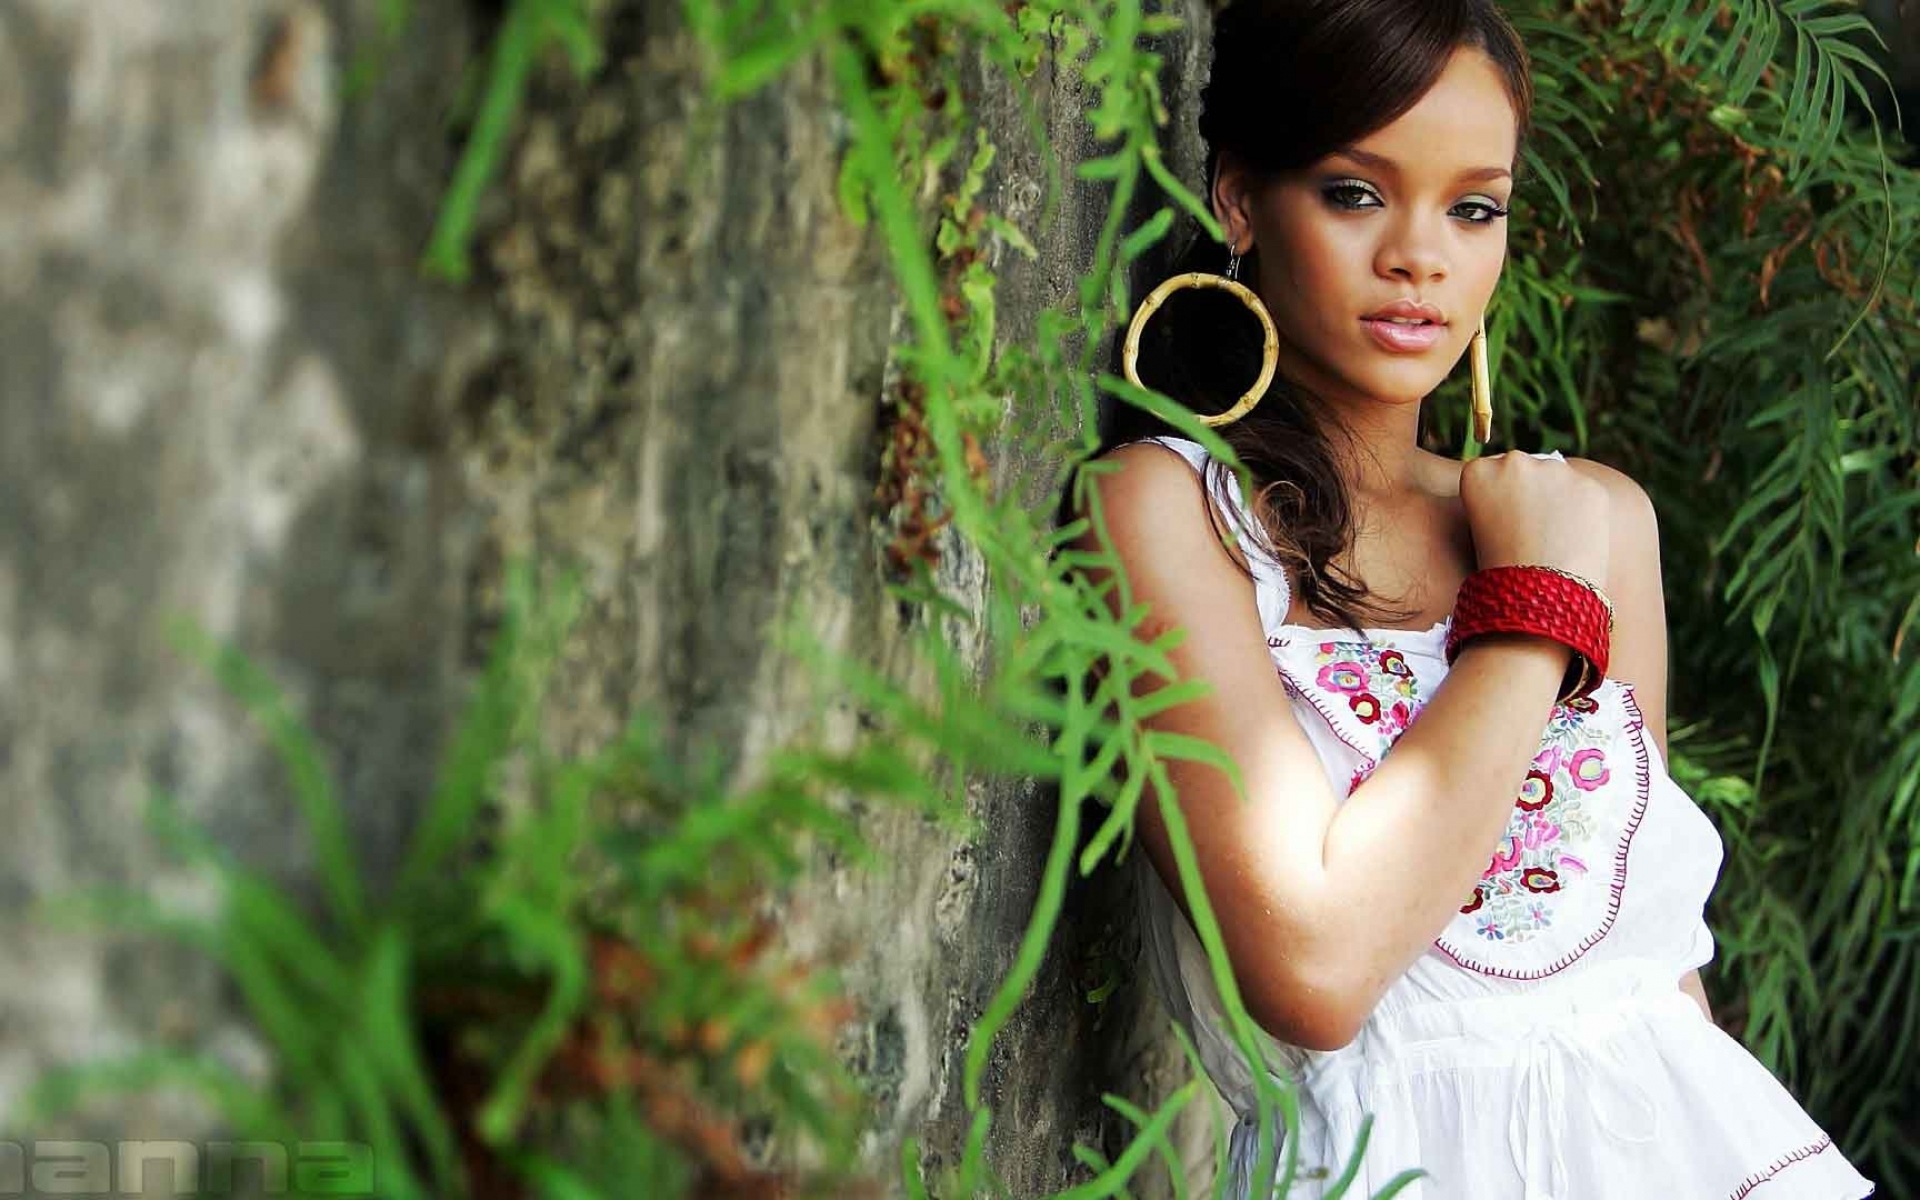 Картинки Rihanna, девушка, зеленый, платье, взгляд фото и обои на рабочий стол